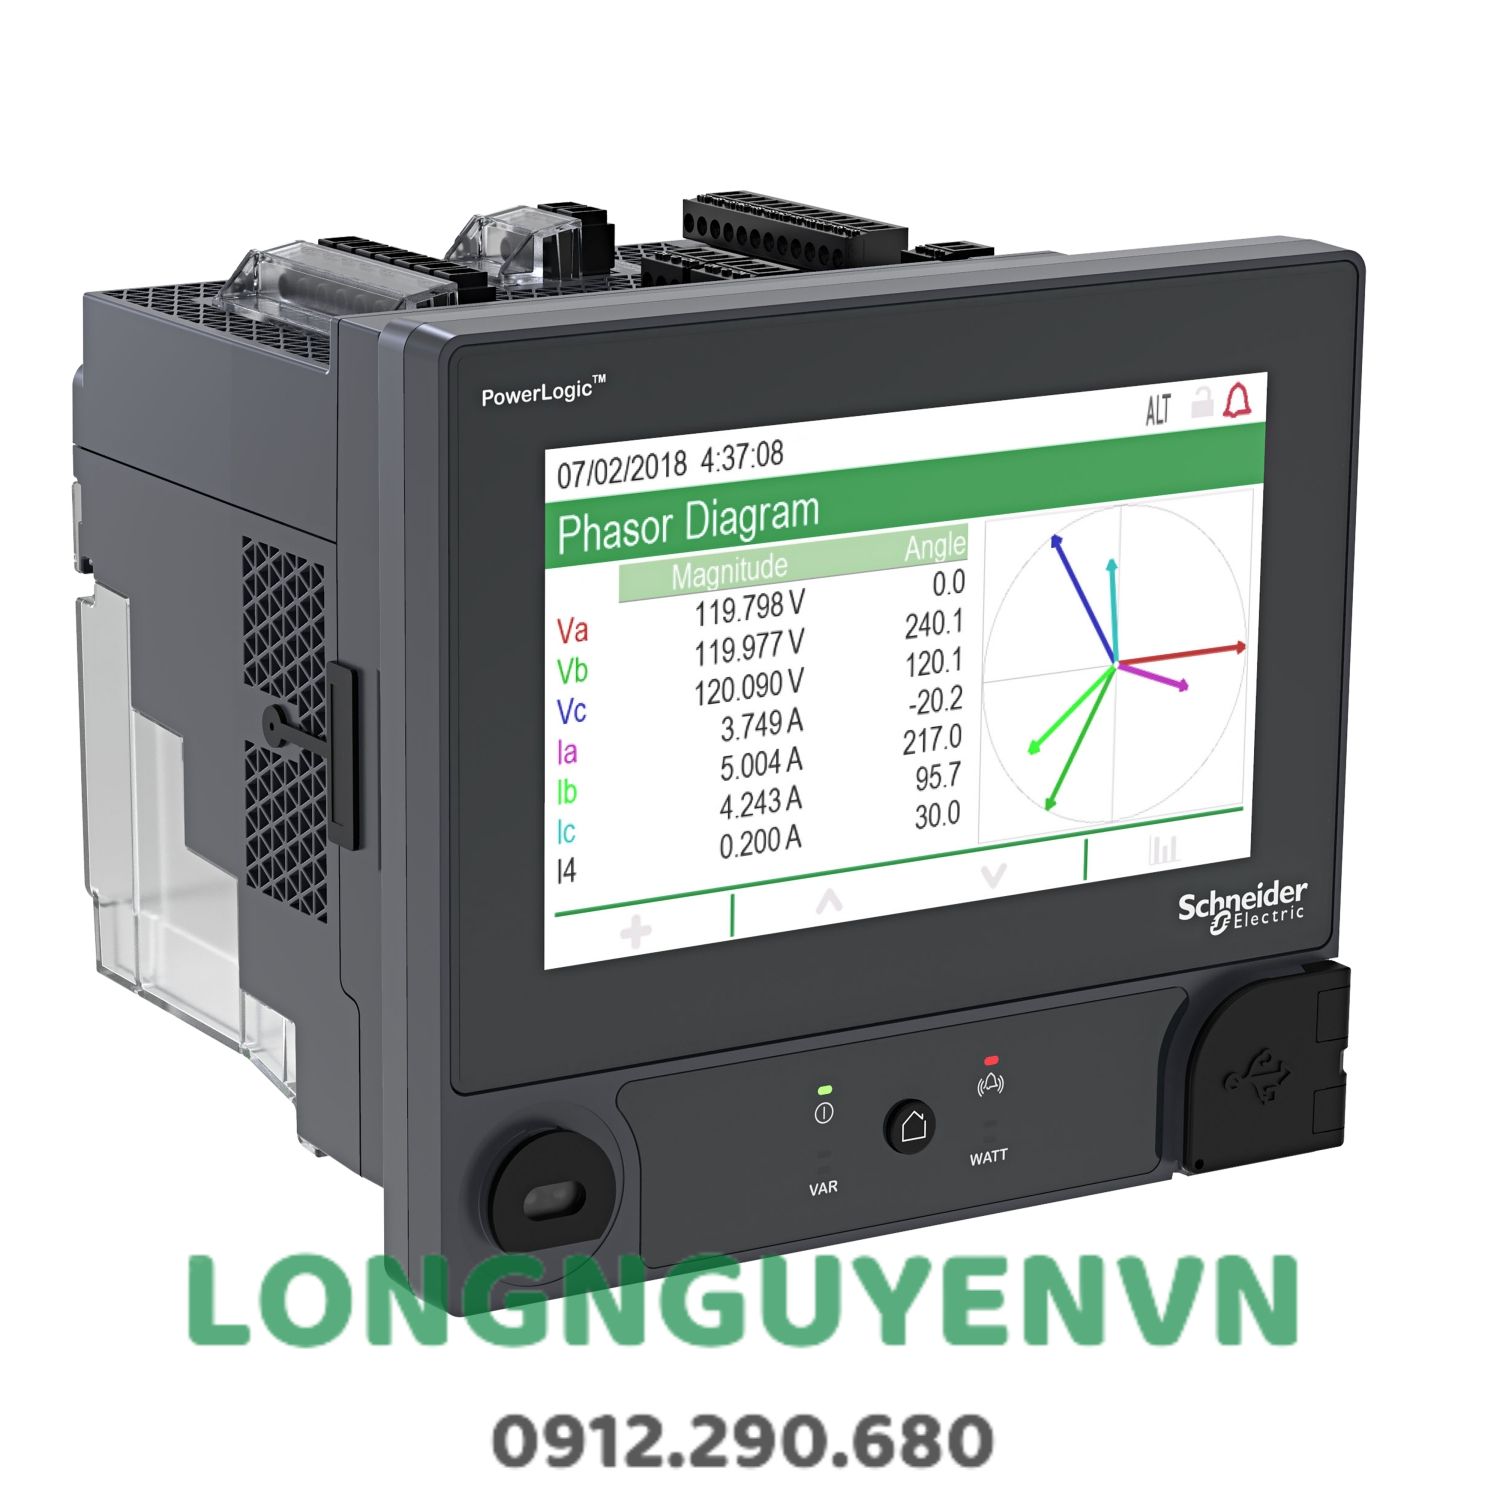 Đồng hồ PowerLogic™ ION9000, LVDC, ngàm DIN, màn hình 192 mm, bộ chuyển đổi B2B, bộ CTNH